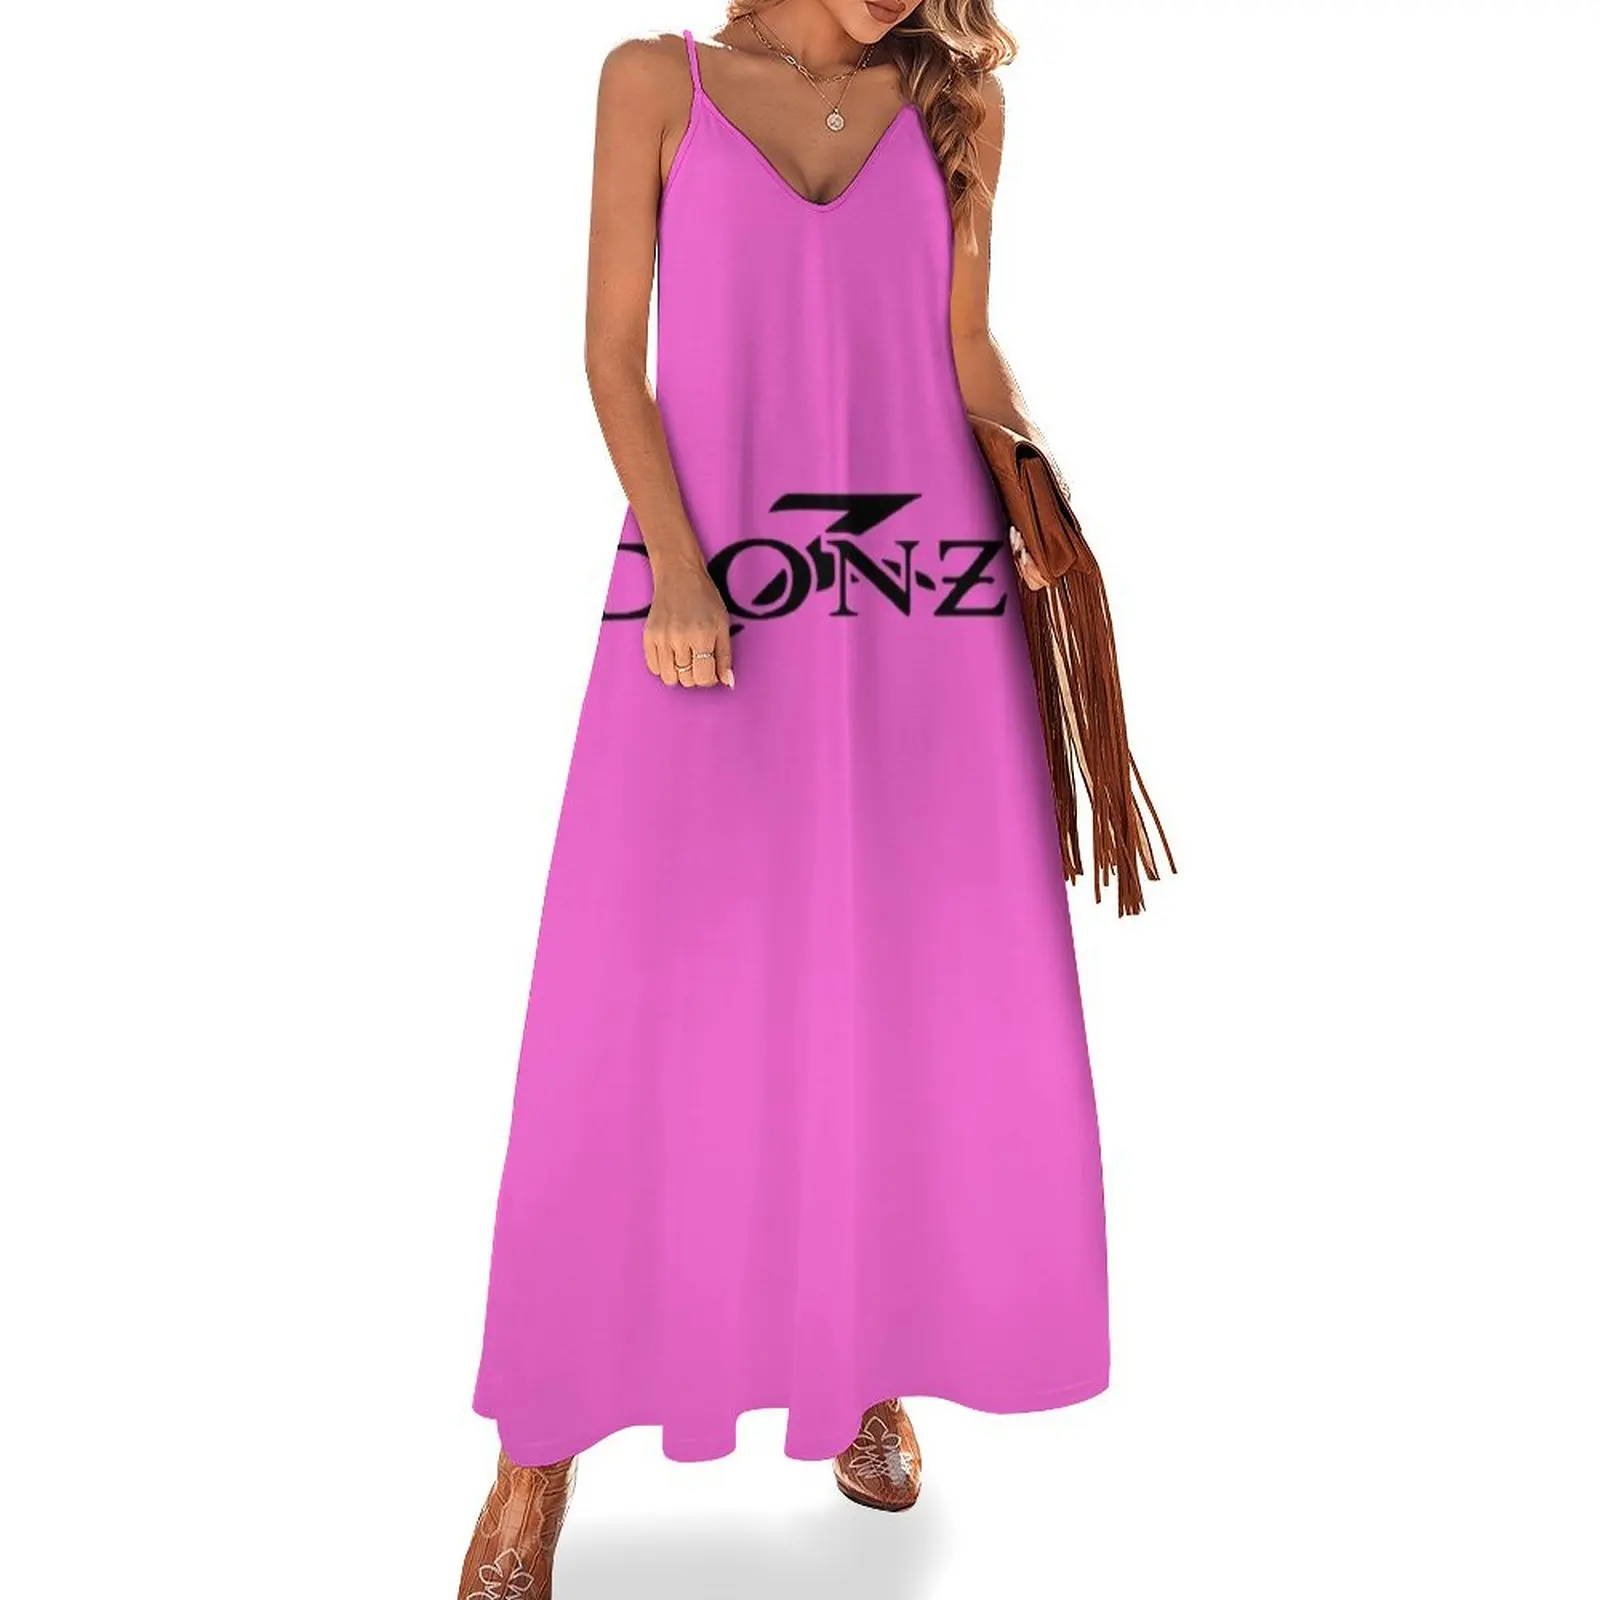 

Женское платье без рукавов Donzi, красное, розовое, синее, желтое платье для особых случаев